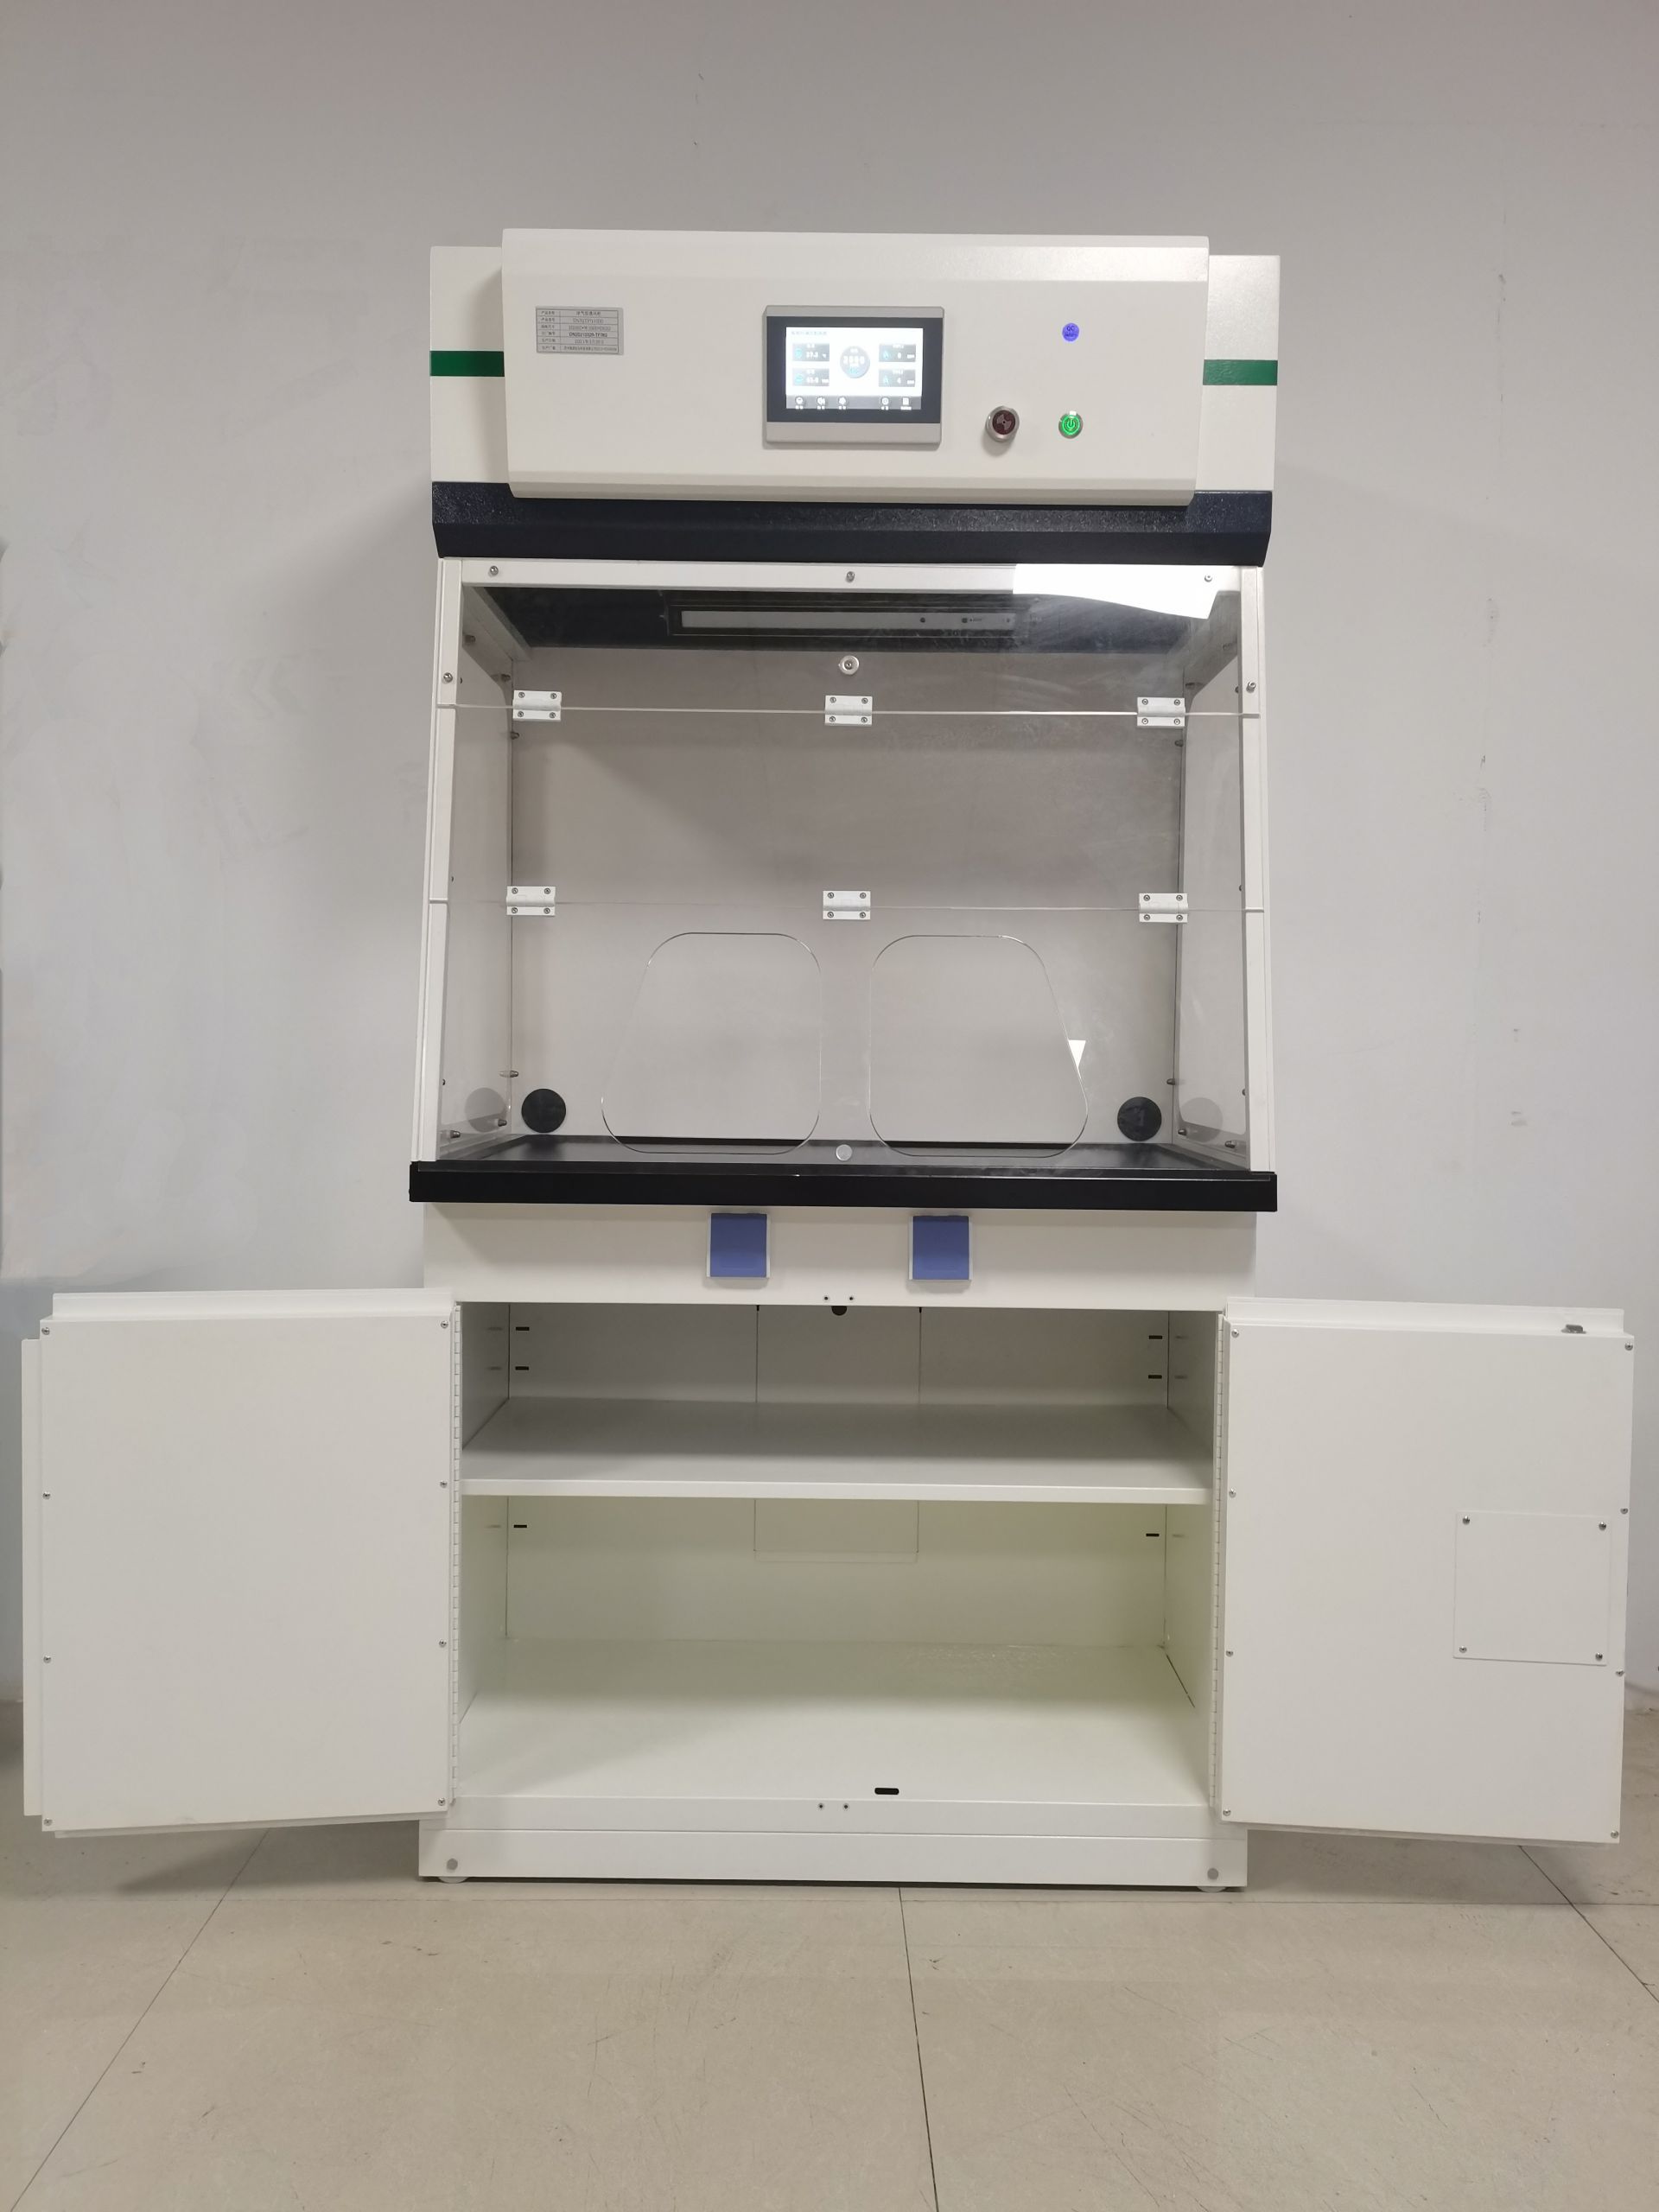 凈氣型藥品柜設備介紹及應用范圍